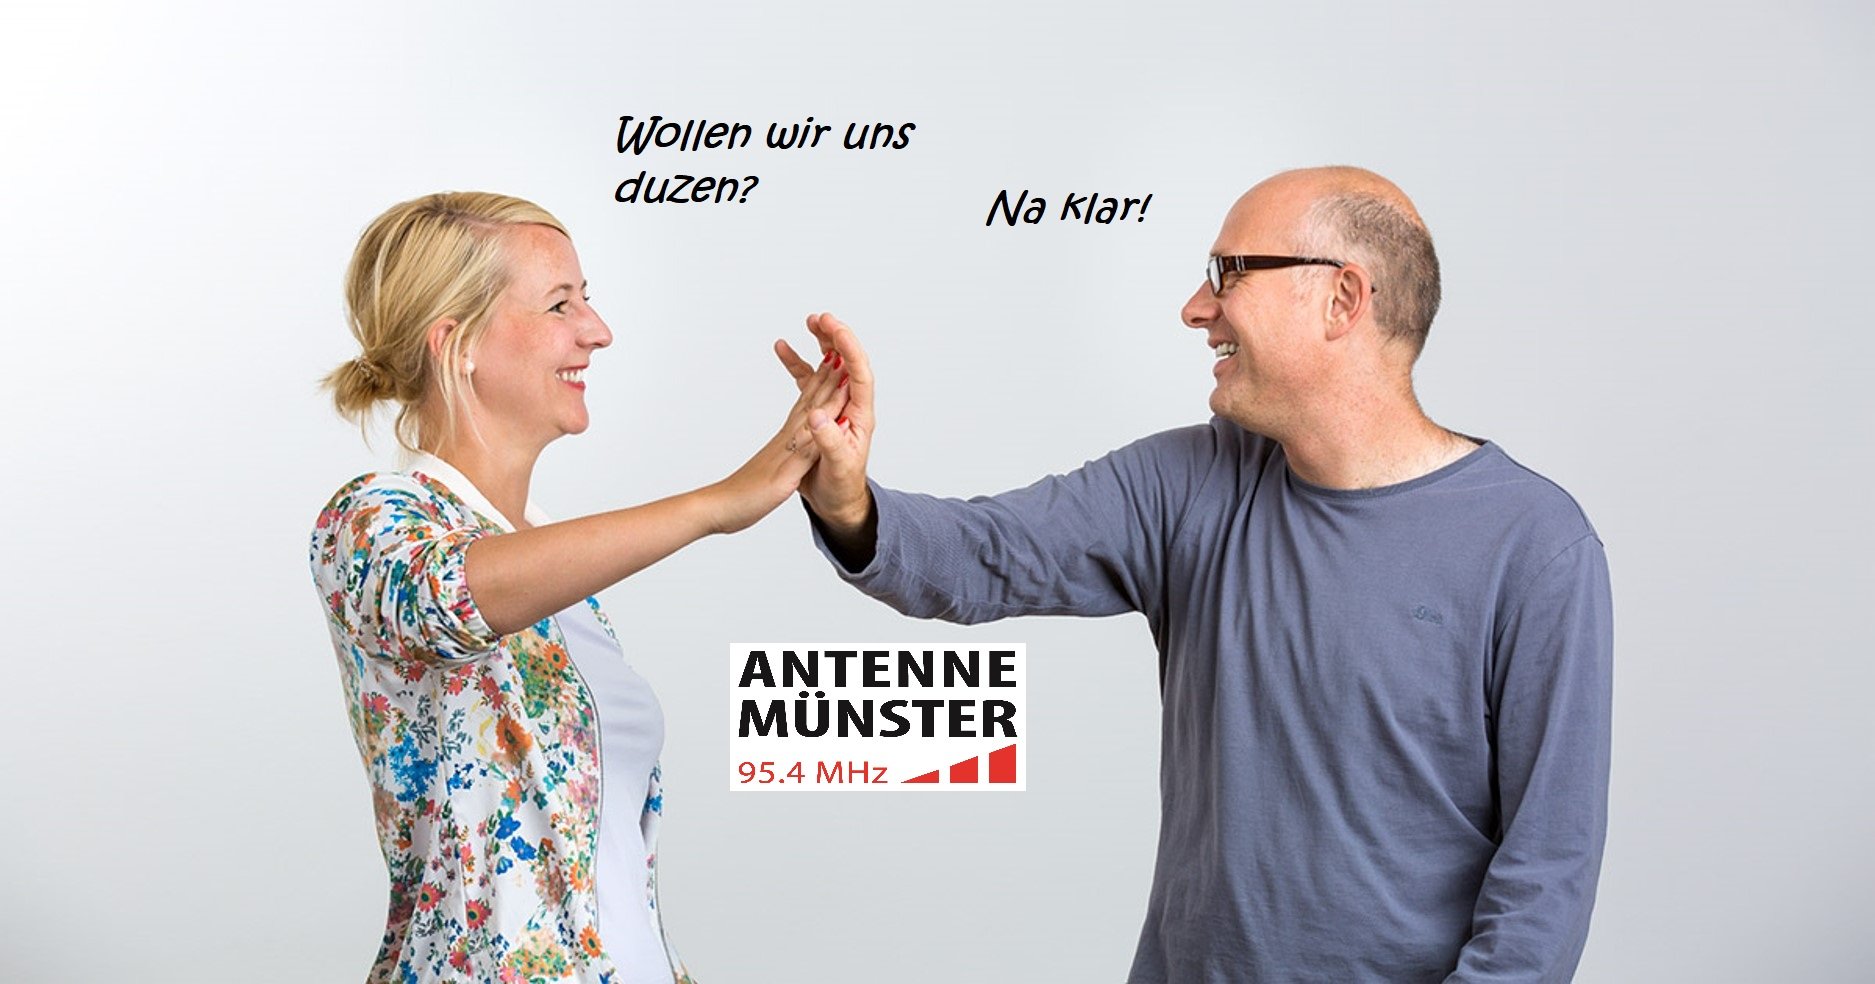 Antenne Münster Wollen wir uns duzen